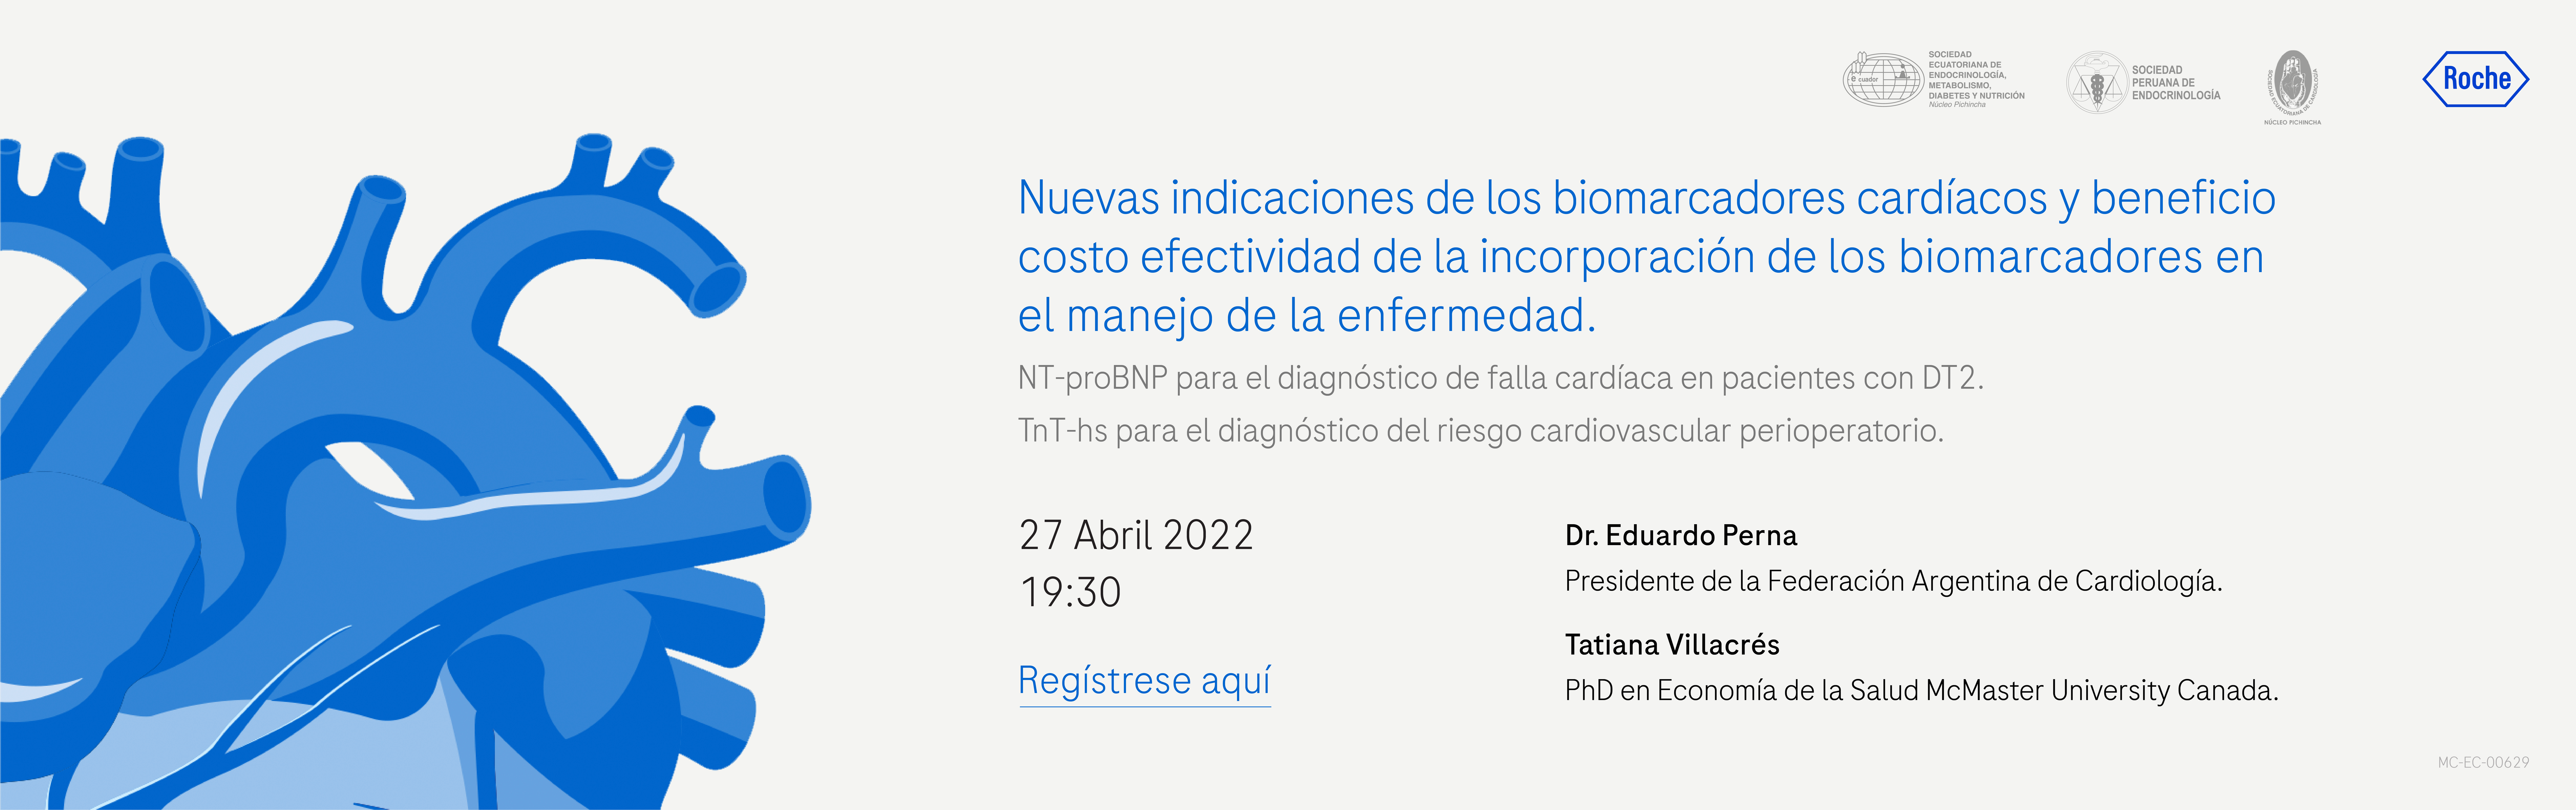 Invitacion Evento Cardiac 2_BANNER SOCIEDAD PERUANA-05.png